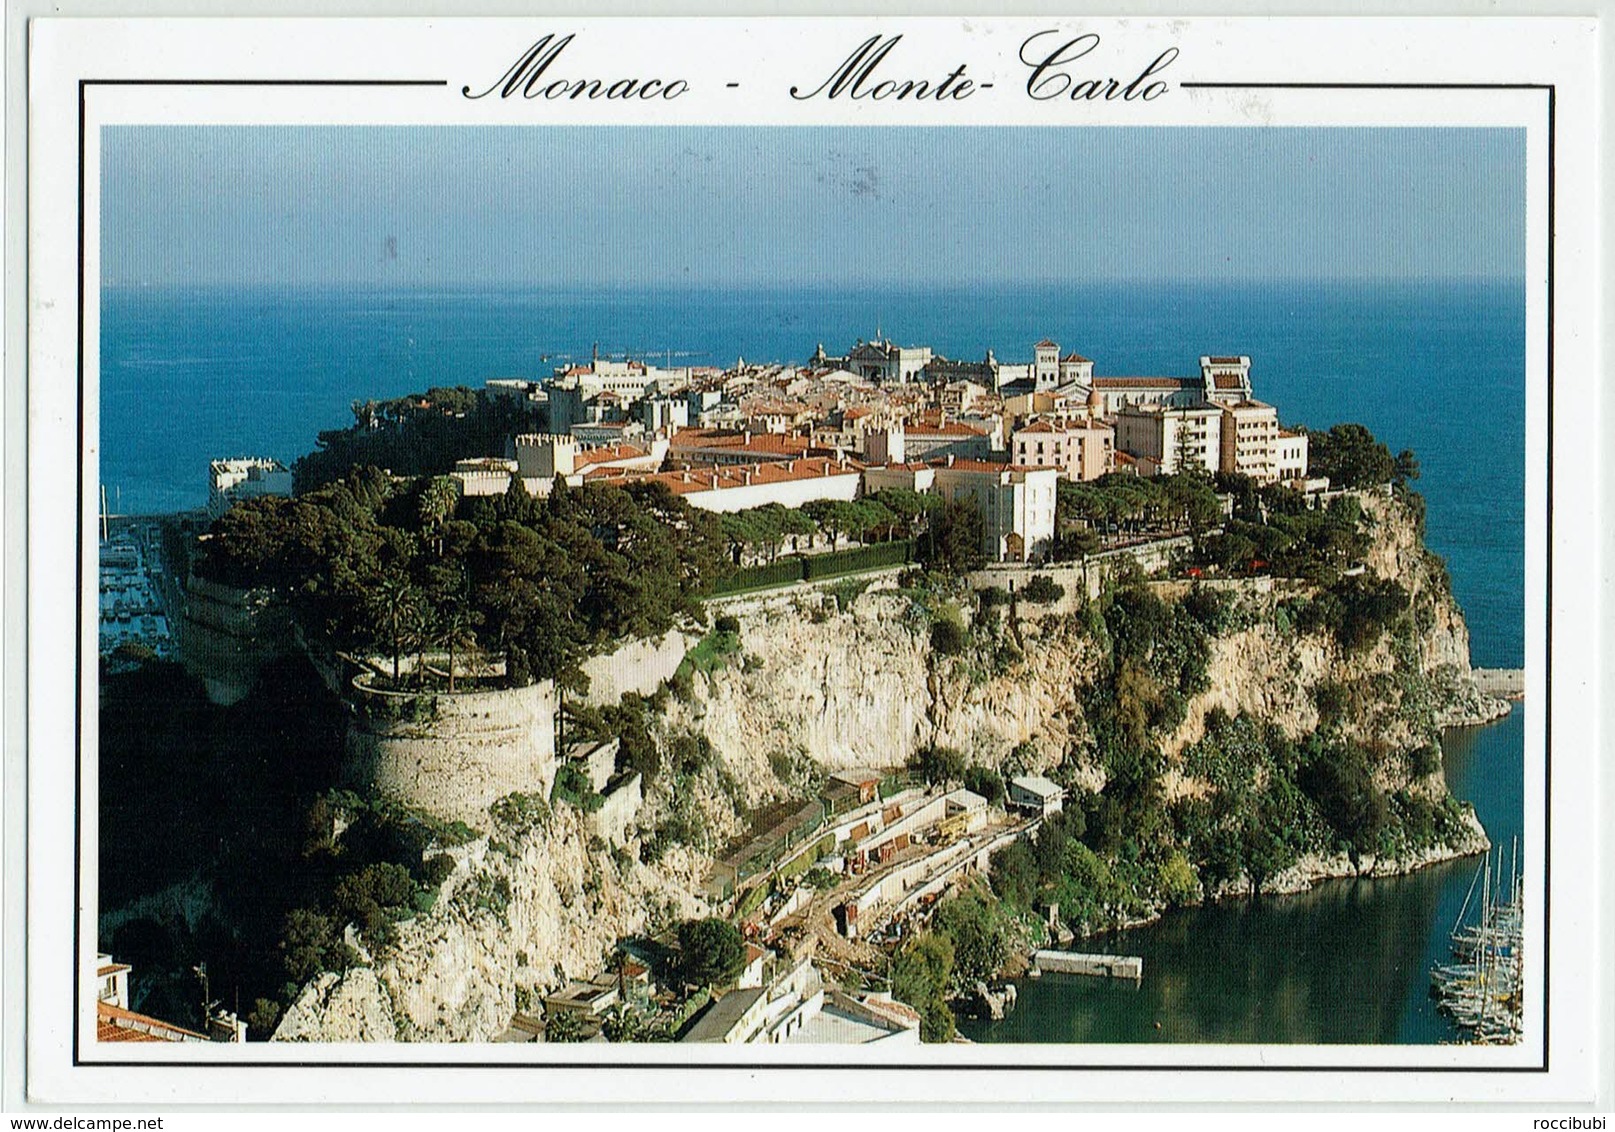 Monaco, Monte-Carlo - Monte-Carlo